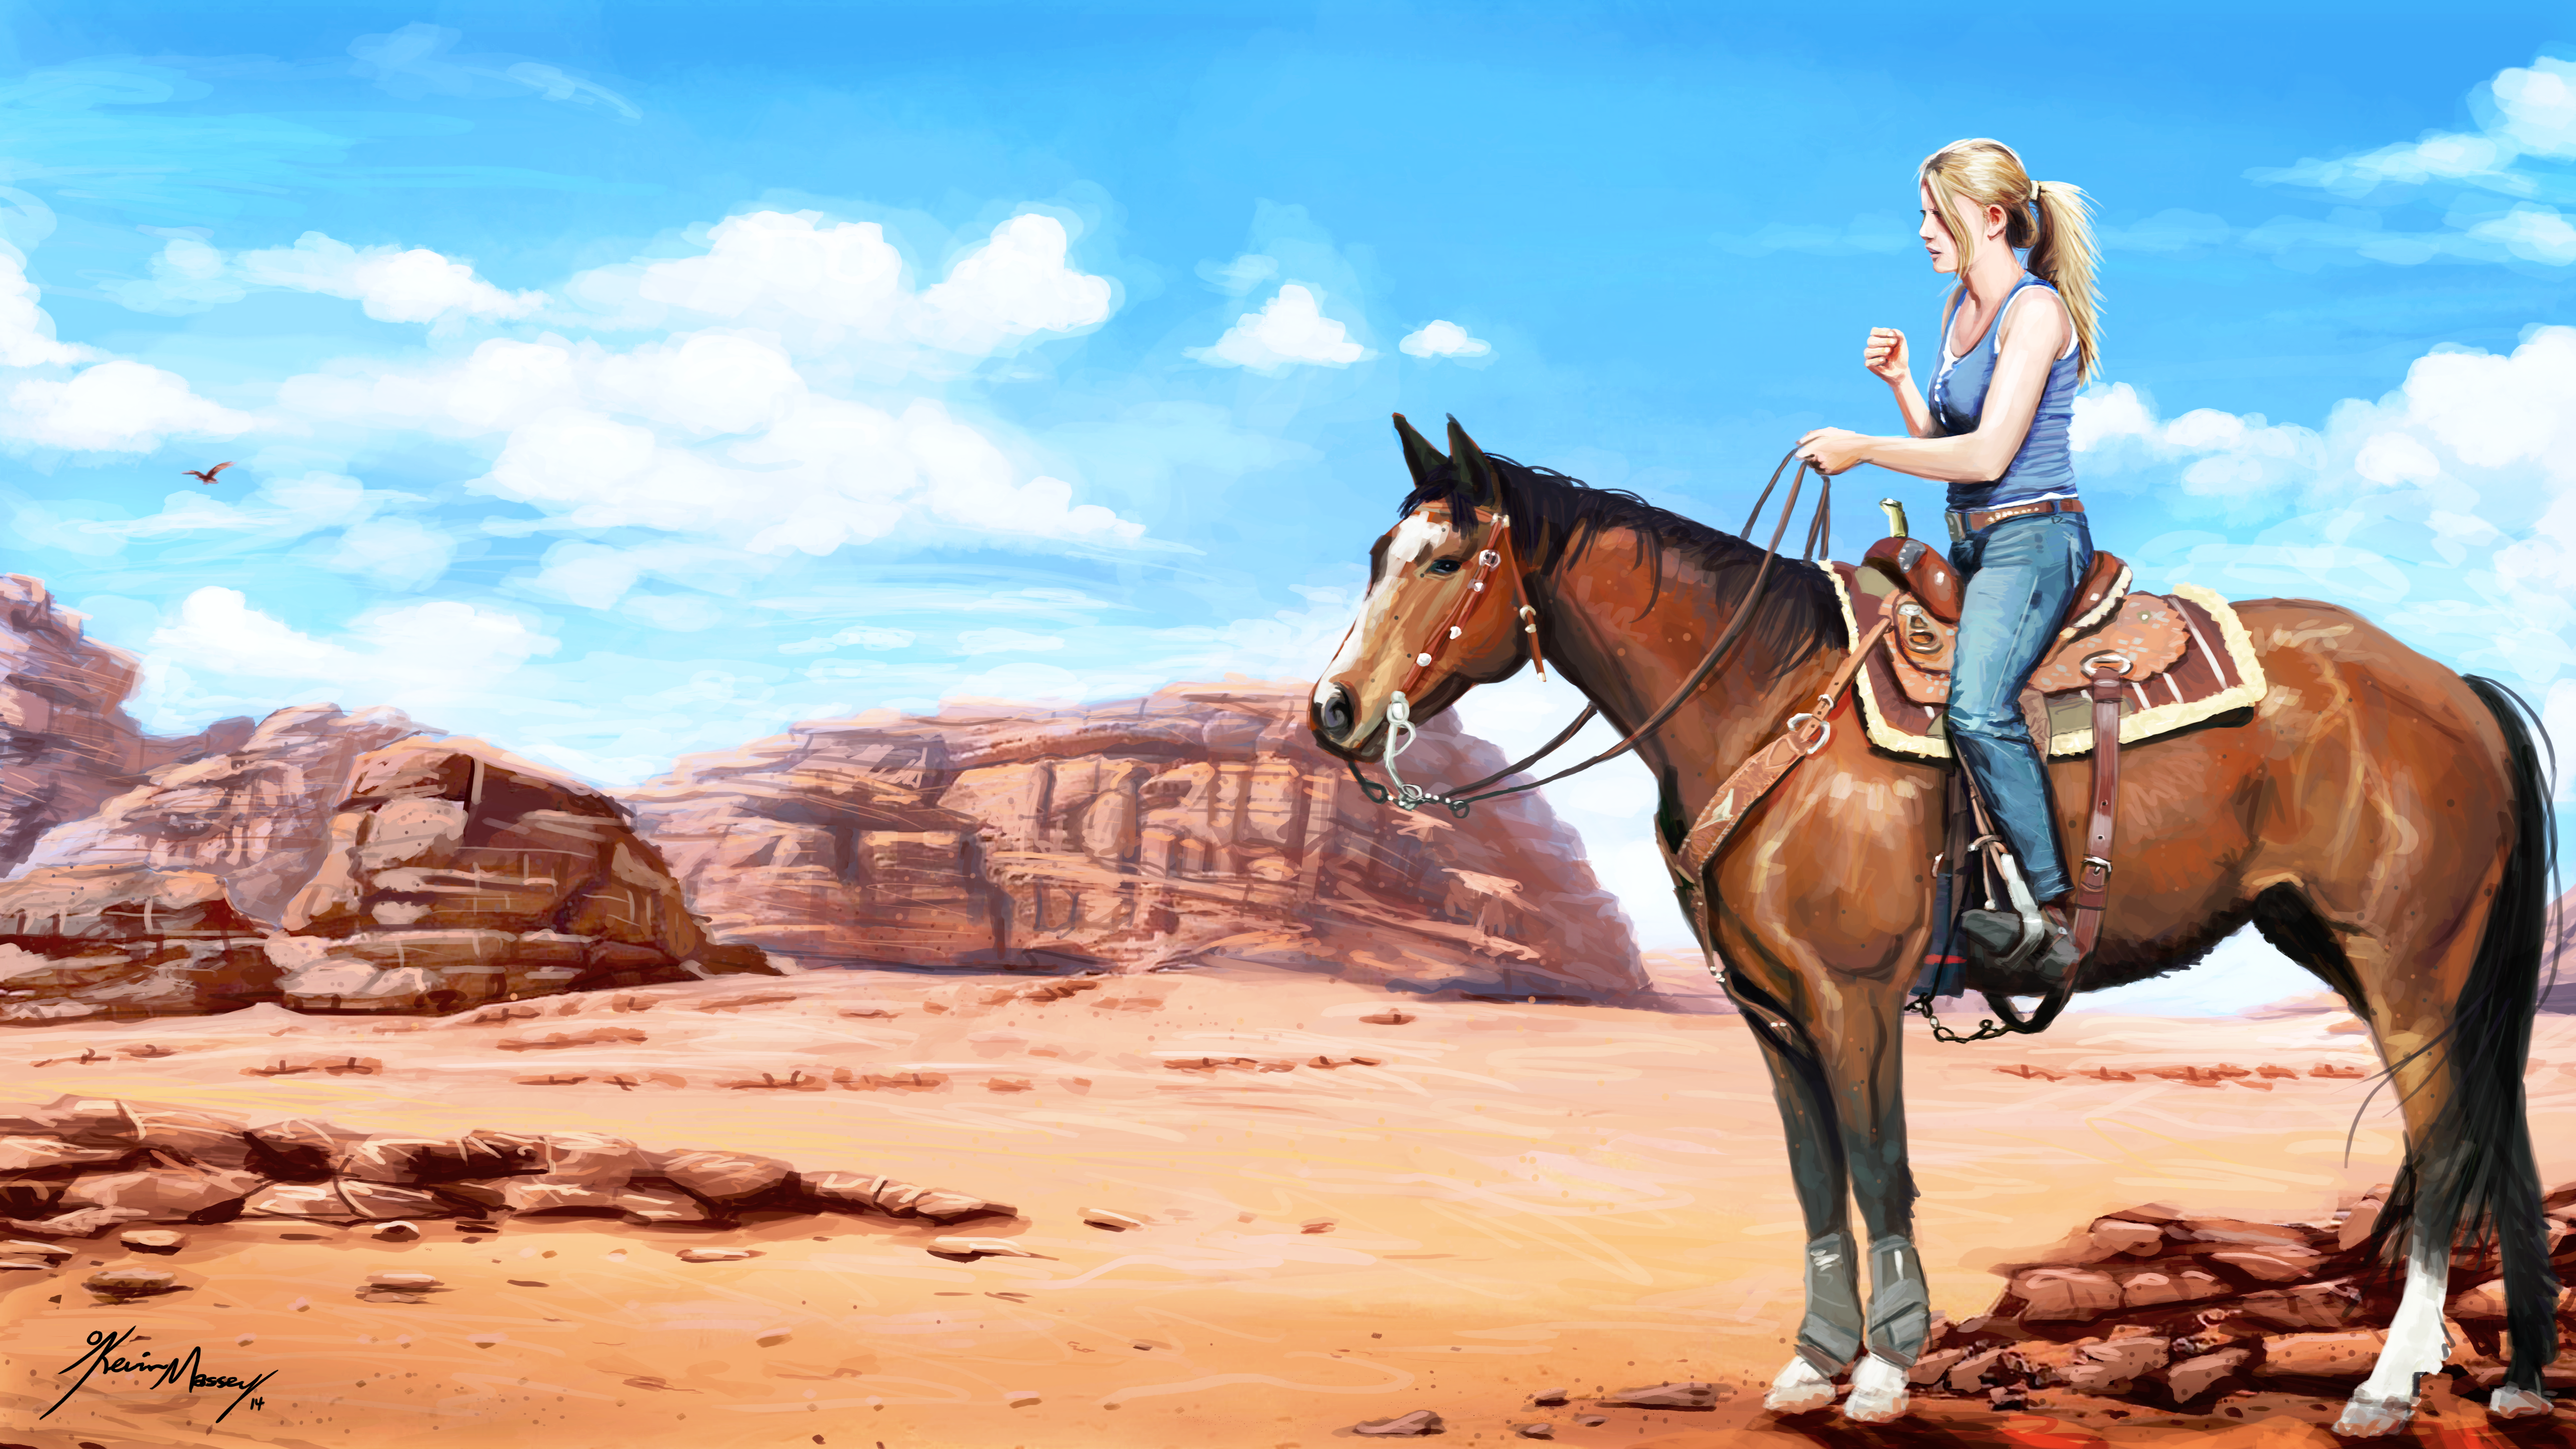 Outdoors Women Outdoors Clear Sky Horse Riding Western Desert Digital Art Kev Art Horse Sky Clouds 5120x2880